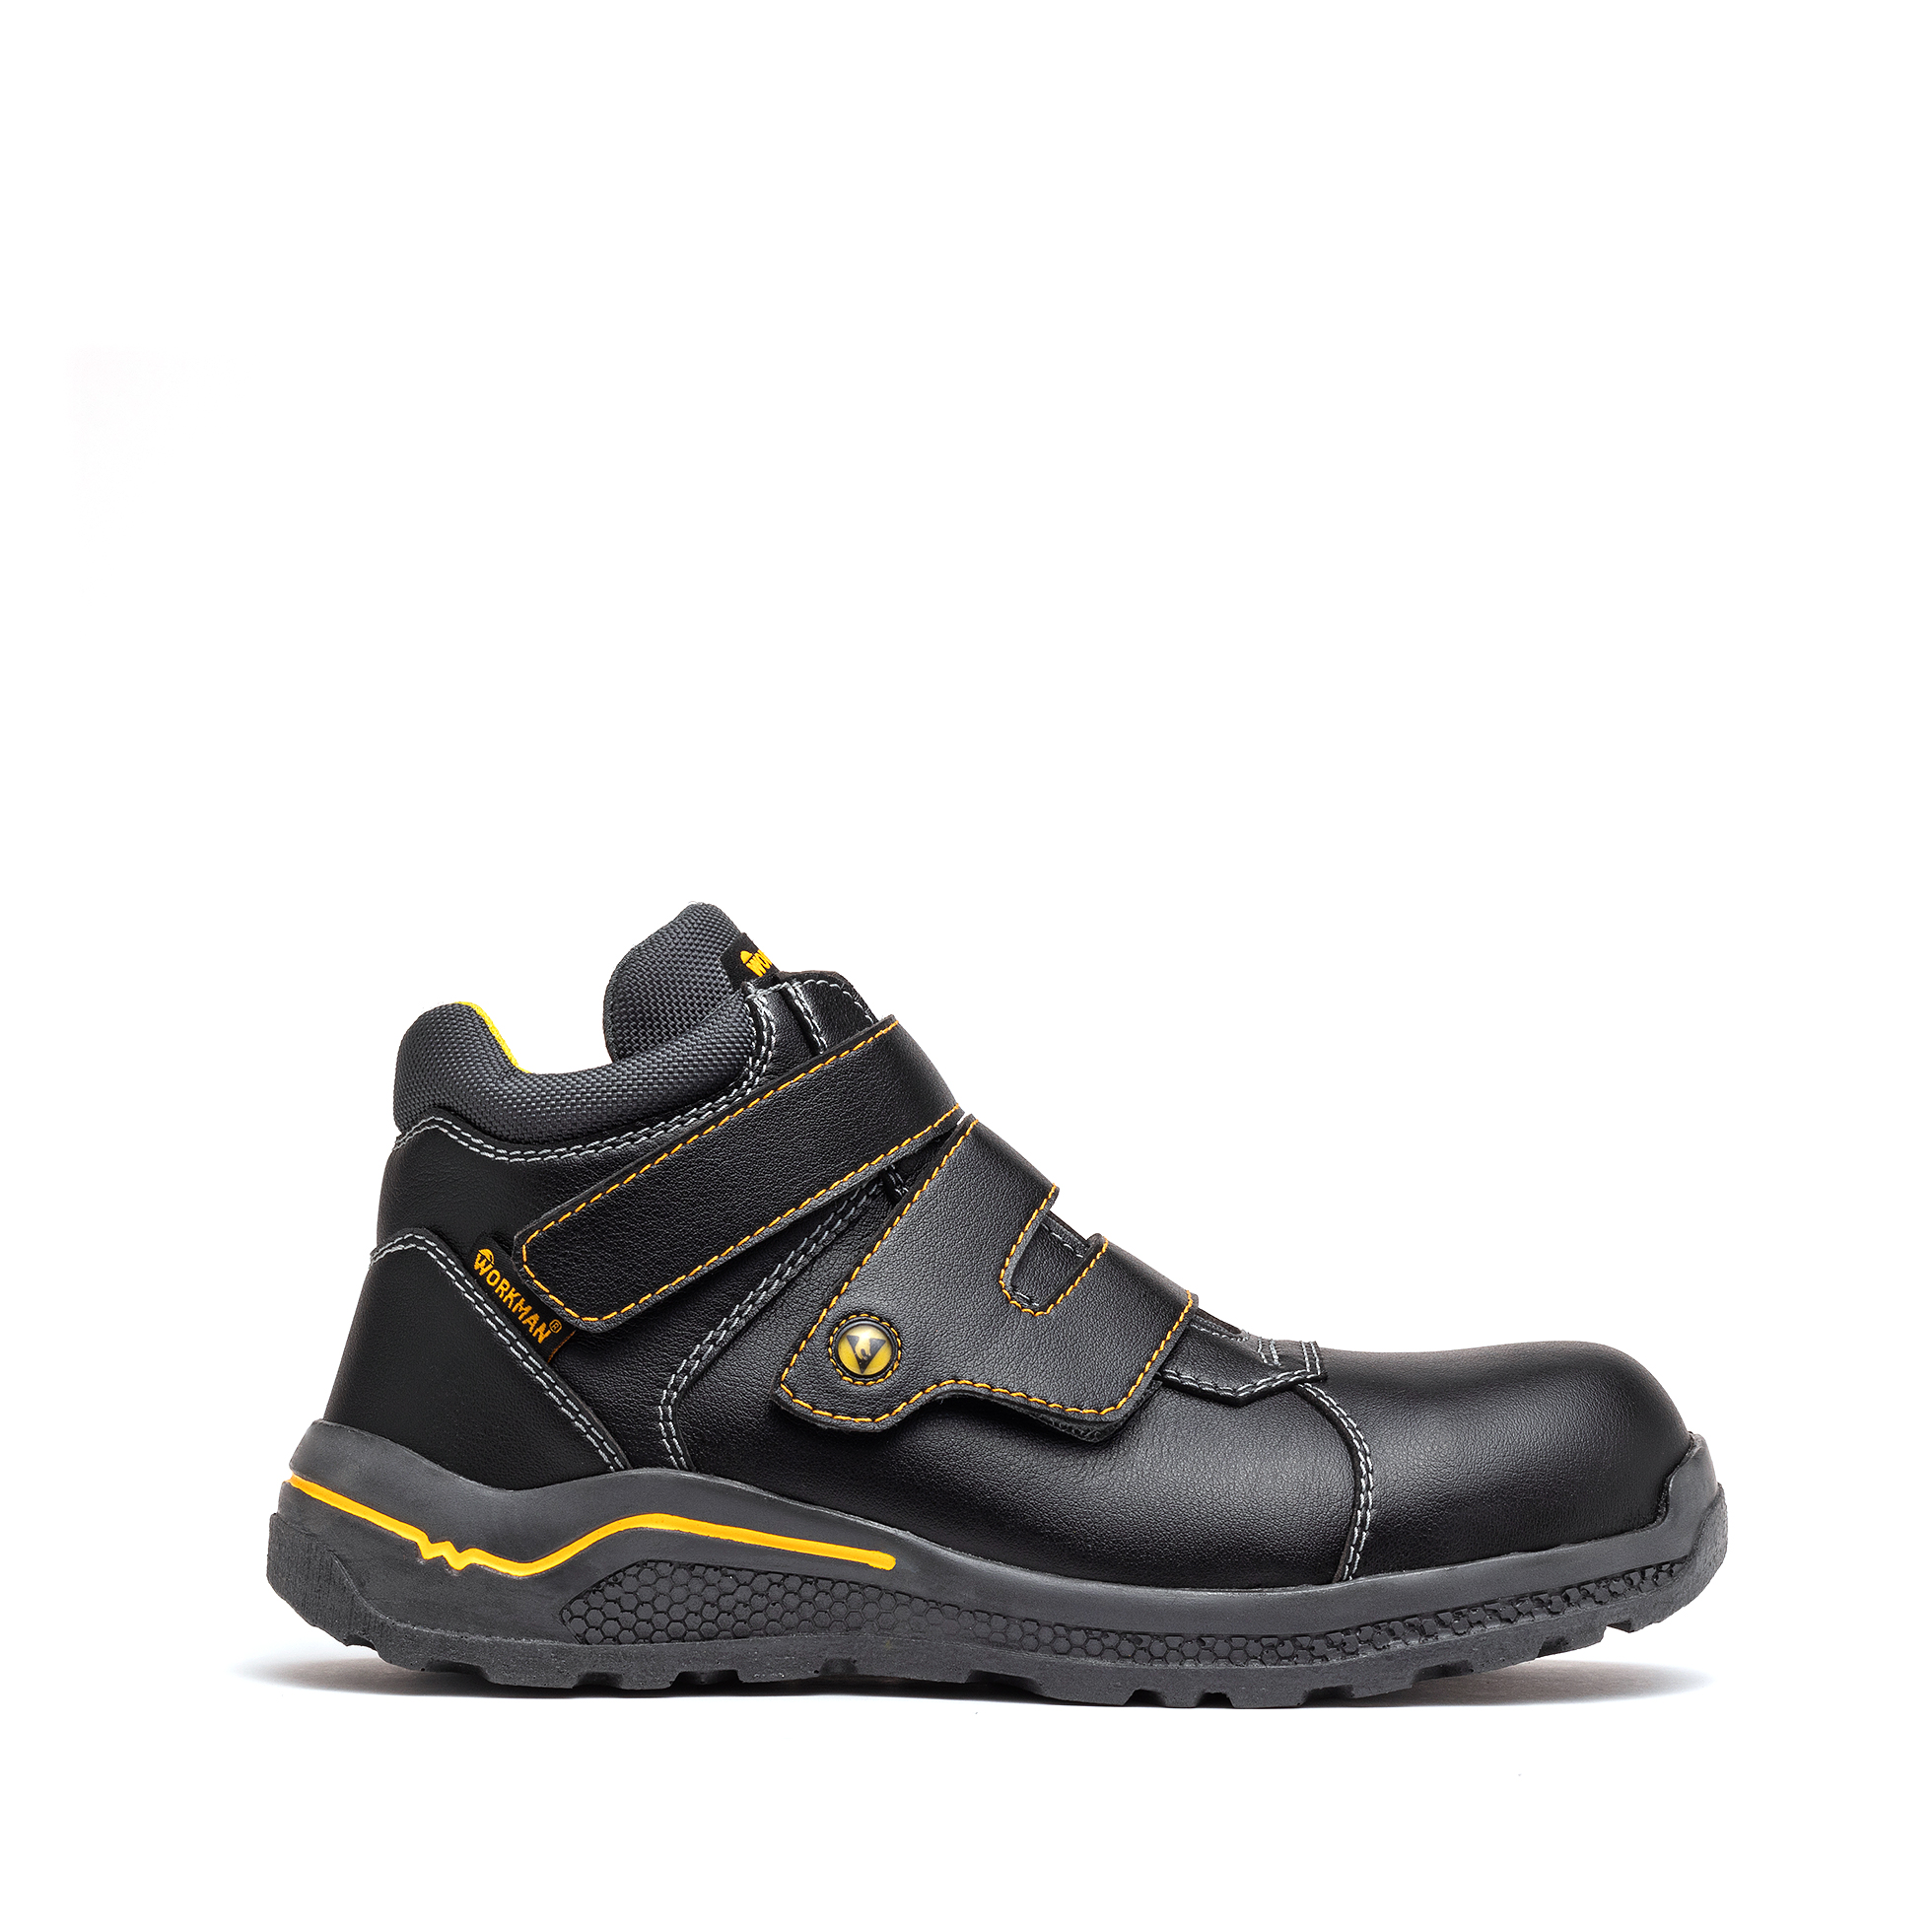 Calzado de Seguridad Borceguí 306 ESD Negro - Workman Calzado de Seguridad Industrial - Antiestático